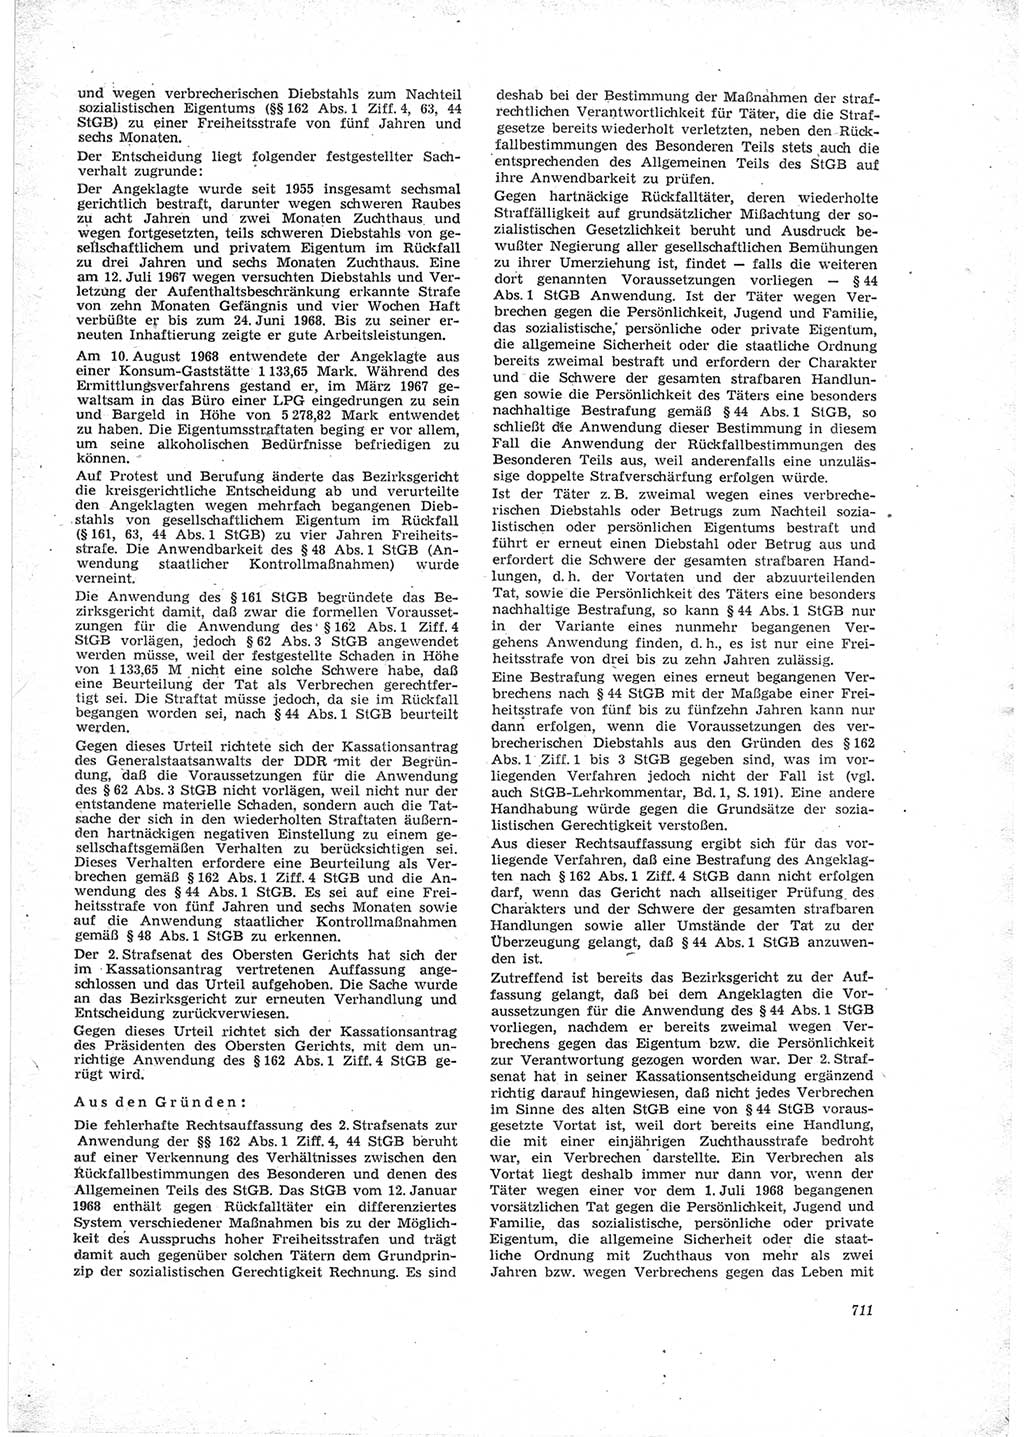 Neue Justiz (NJ), Zeitschrift für Recht und Rechtswissenschaft [Deutsche Demokratische Republik (DDR)], 23. Jahrgang 1969, Seite 711 (NJ DDR 1969, S. 711)